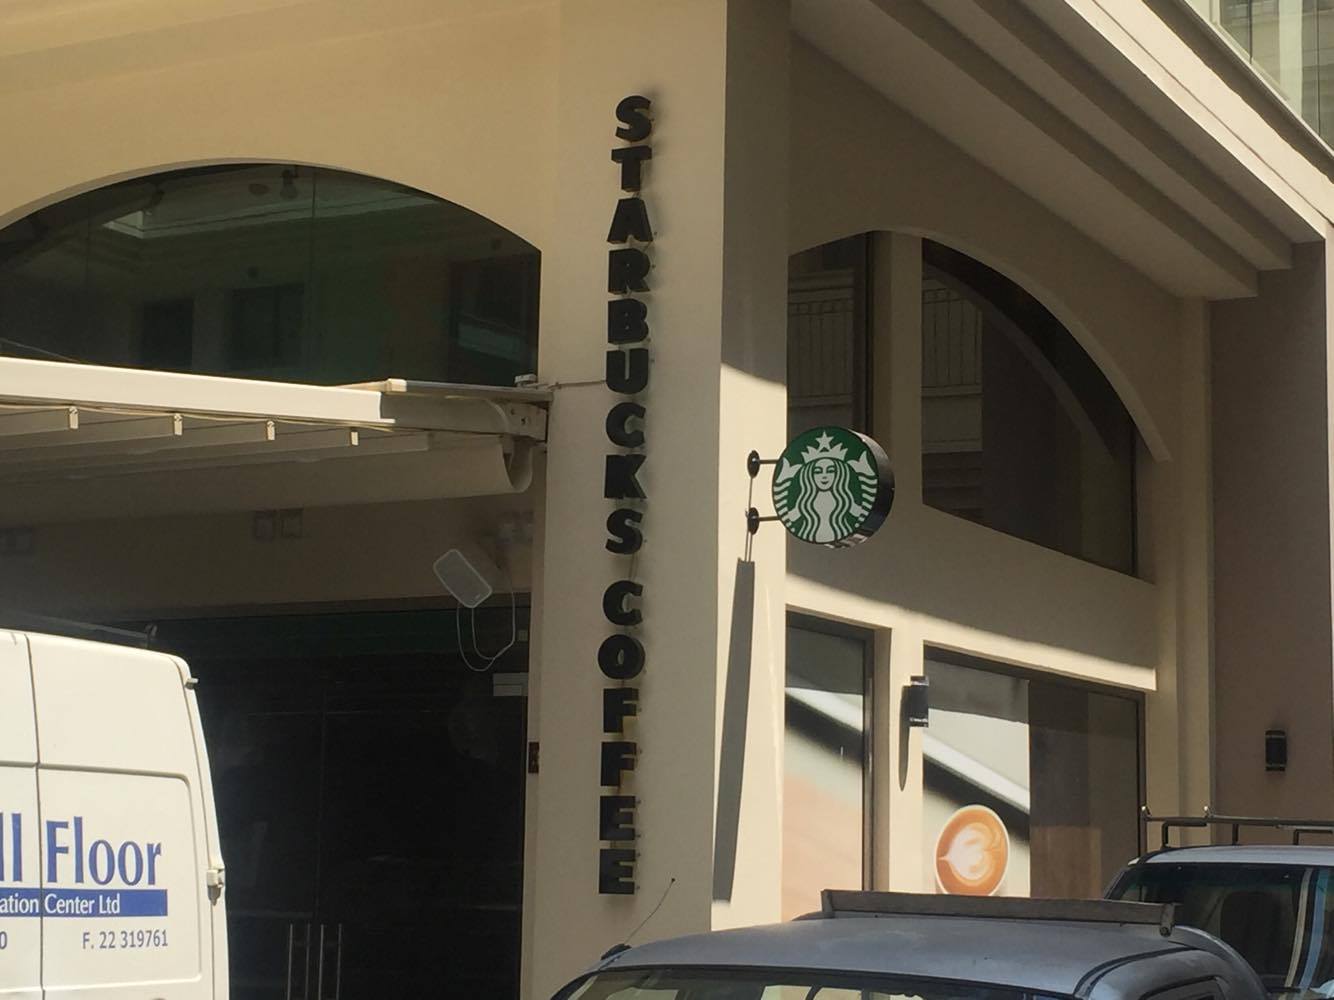 Έρχεται ολοκαίνουργιο Starbucks στην καρδιά της Λάρνακας (pics & video)